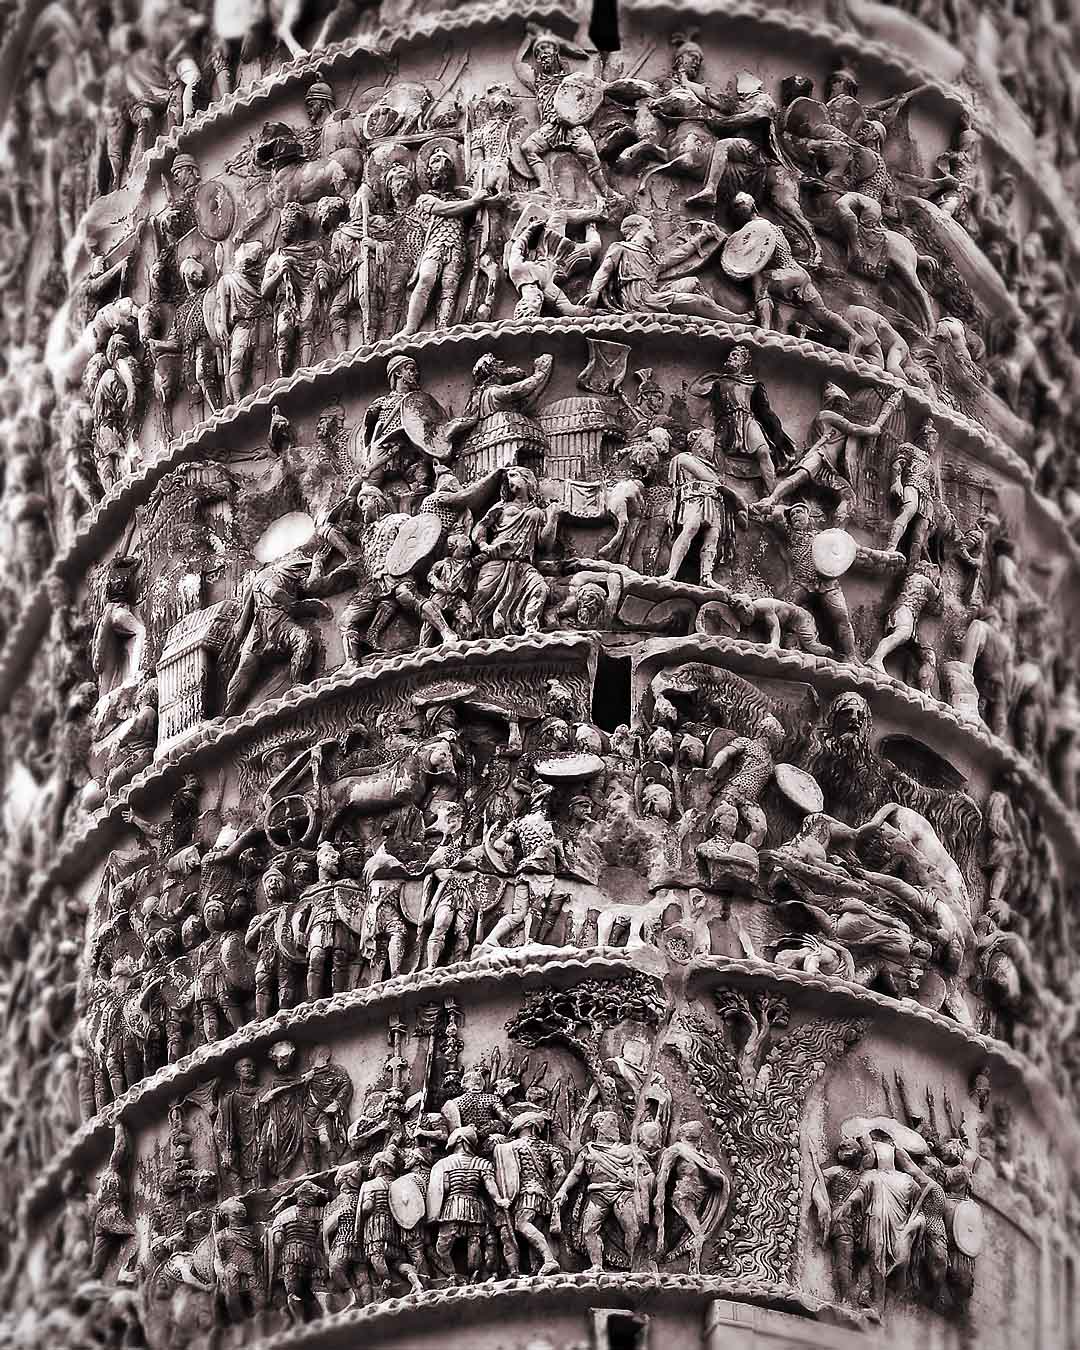 Columna di Marcus Aurelius #1, Rome, Italy, 2008